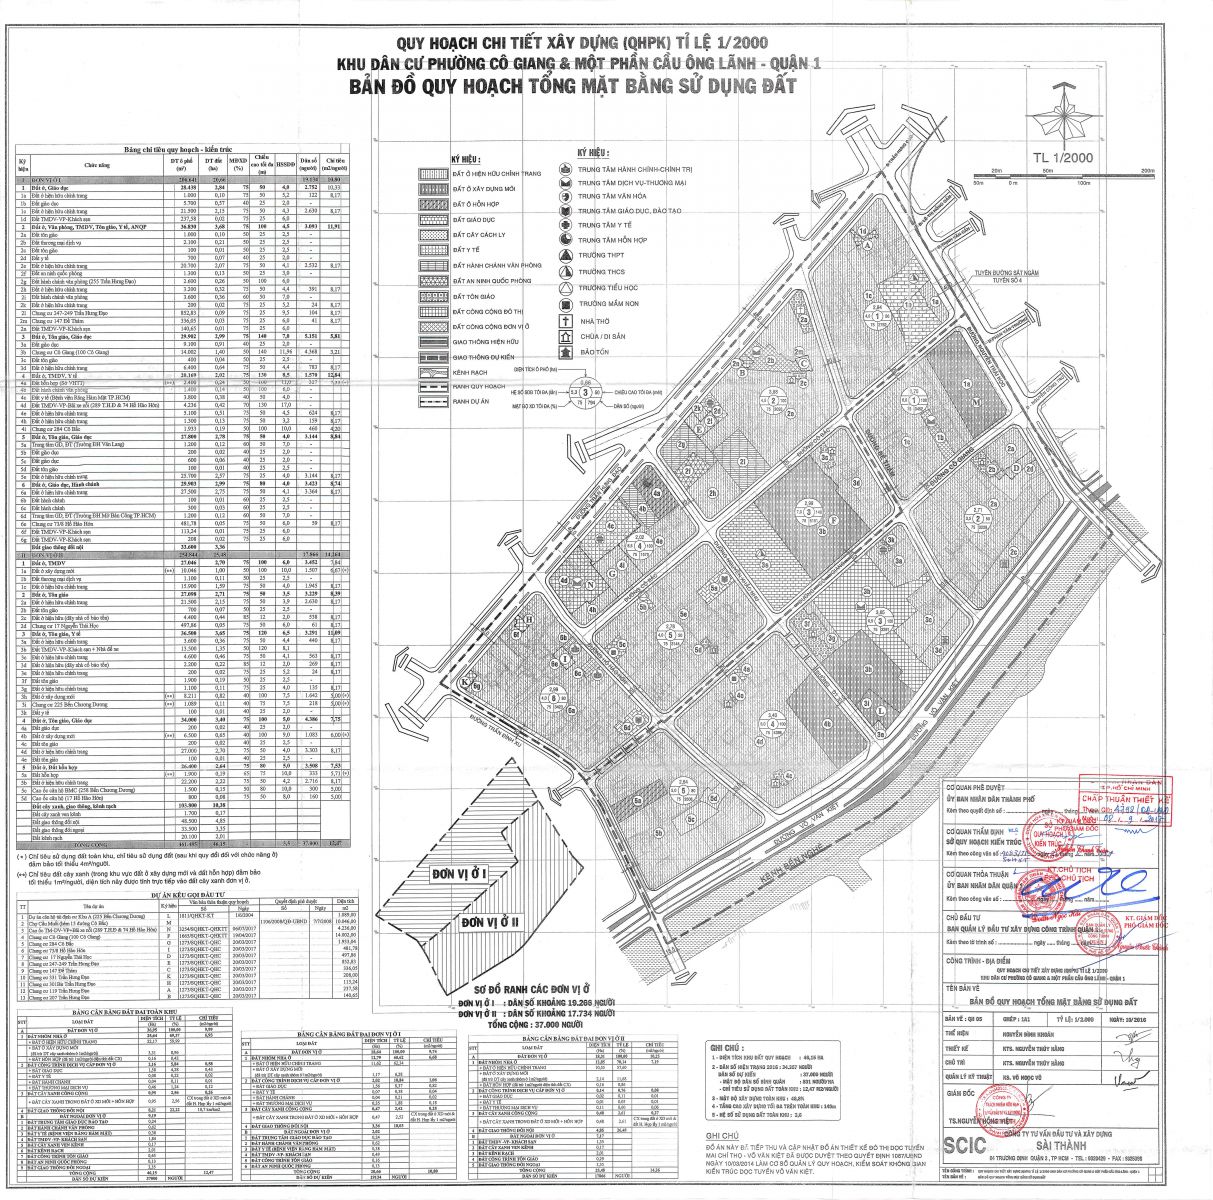 Bản đồ quy hoạch 1/2000 phường Cô Giang và một phần Phường Cầu Ông Lãnh, Quận 1